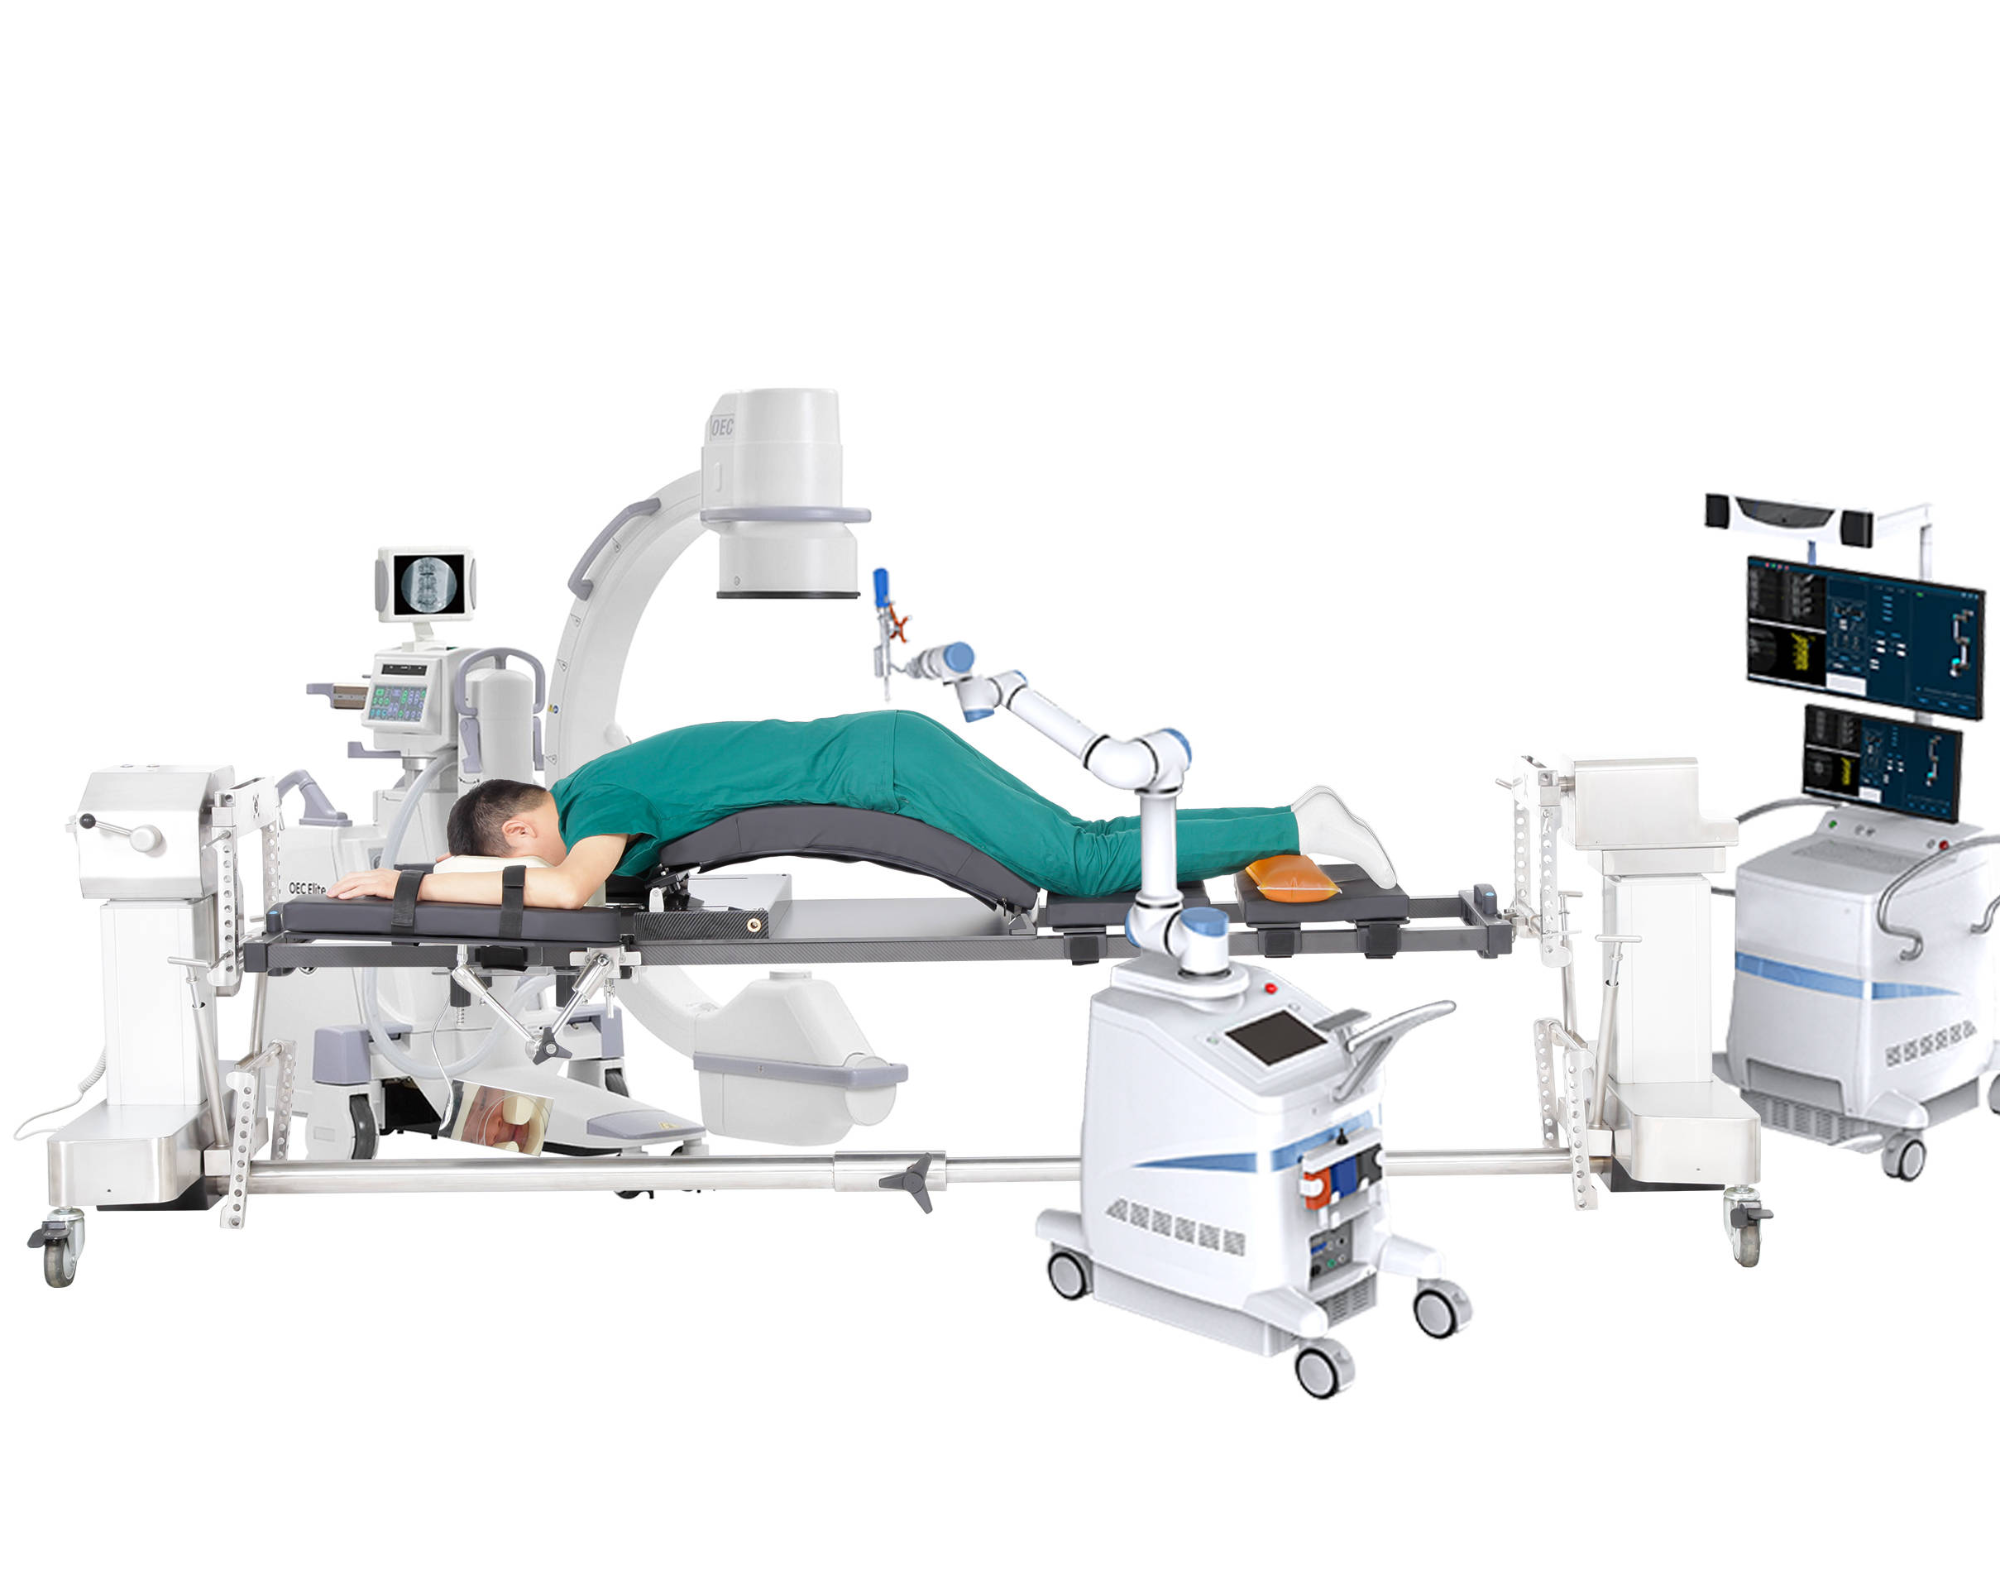 Welche Art von Operationsbett eignet sich für das chirurgische Navigations- und Positionierungssystem?